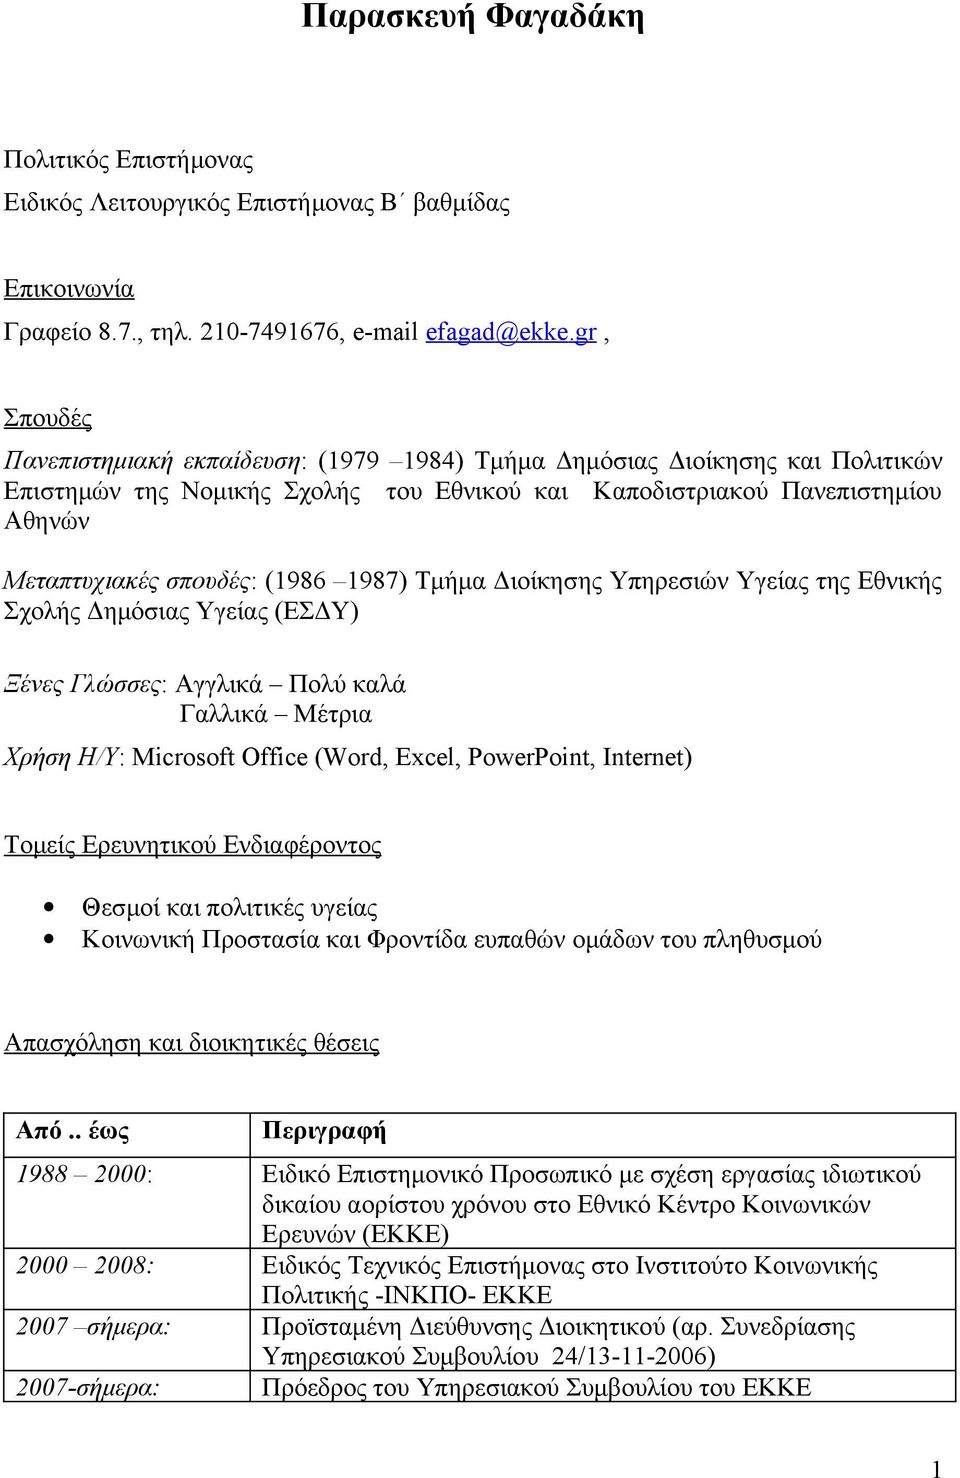 1987) Τμήμα Διοίκησης Υπηρεσιών Υγείας της Εθνικής Σχολής Δημόσιας Υγείας (ΕΣΔΥ) Ξένες Γλώσσες: Αγγλικά Πολύ καλά Γαλλικά Μέτρια Χρήση Η/Υ: Microsoft Office (Word, Excel, PowerPoint, Internet) Τομείς